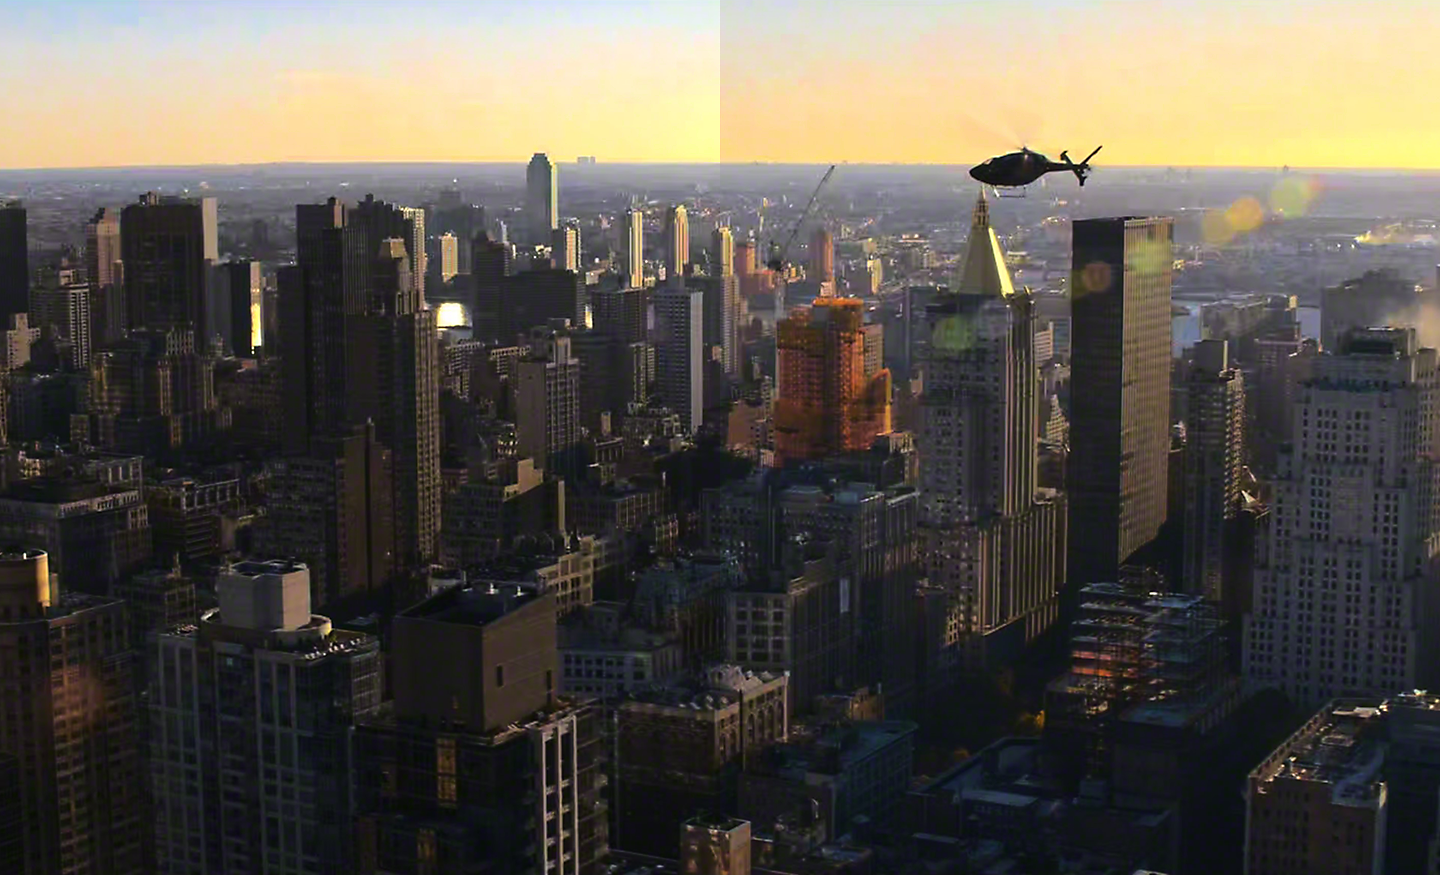 Hélicoptère survolant une ville dans des conditions de faible luminosité